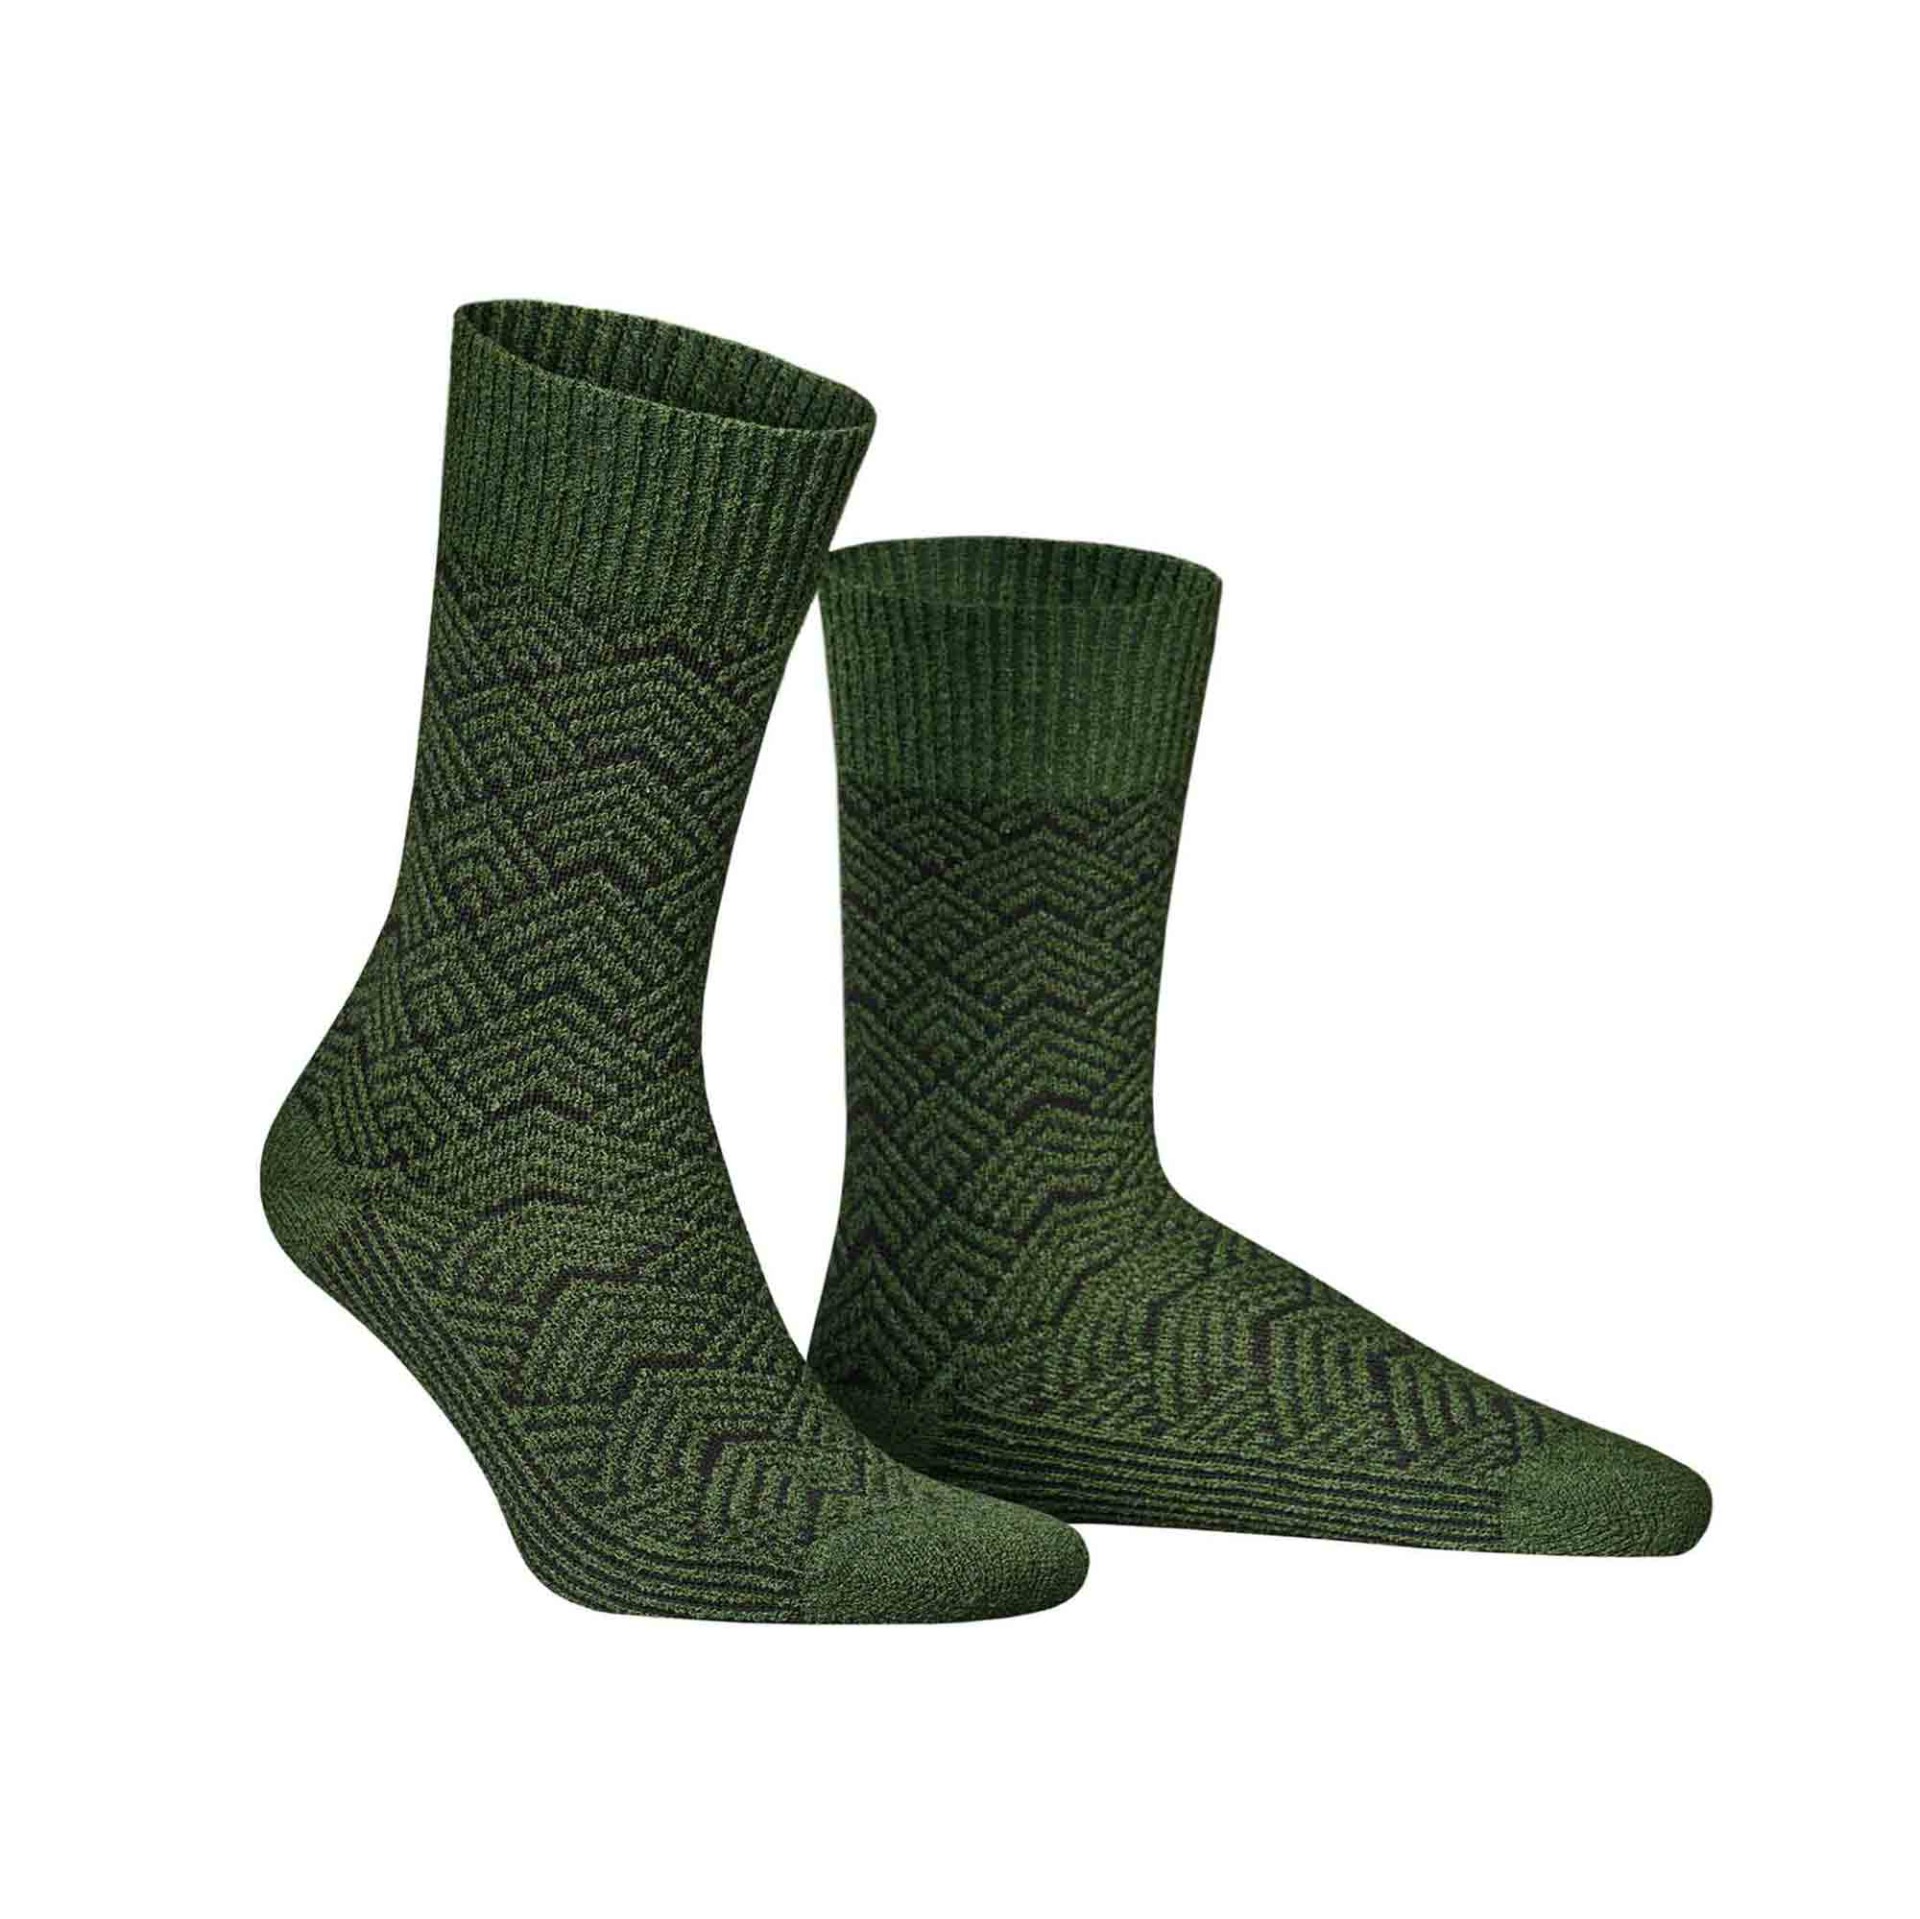 HUDSON Herren RARE -  43/46 - Socken mit coolem Retro-Muster - Forest 0885 (Grün)